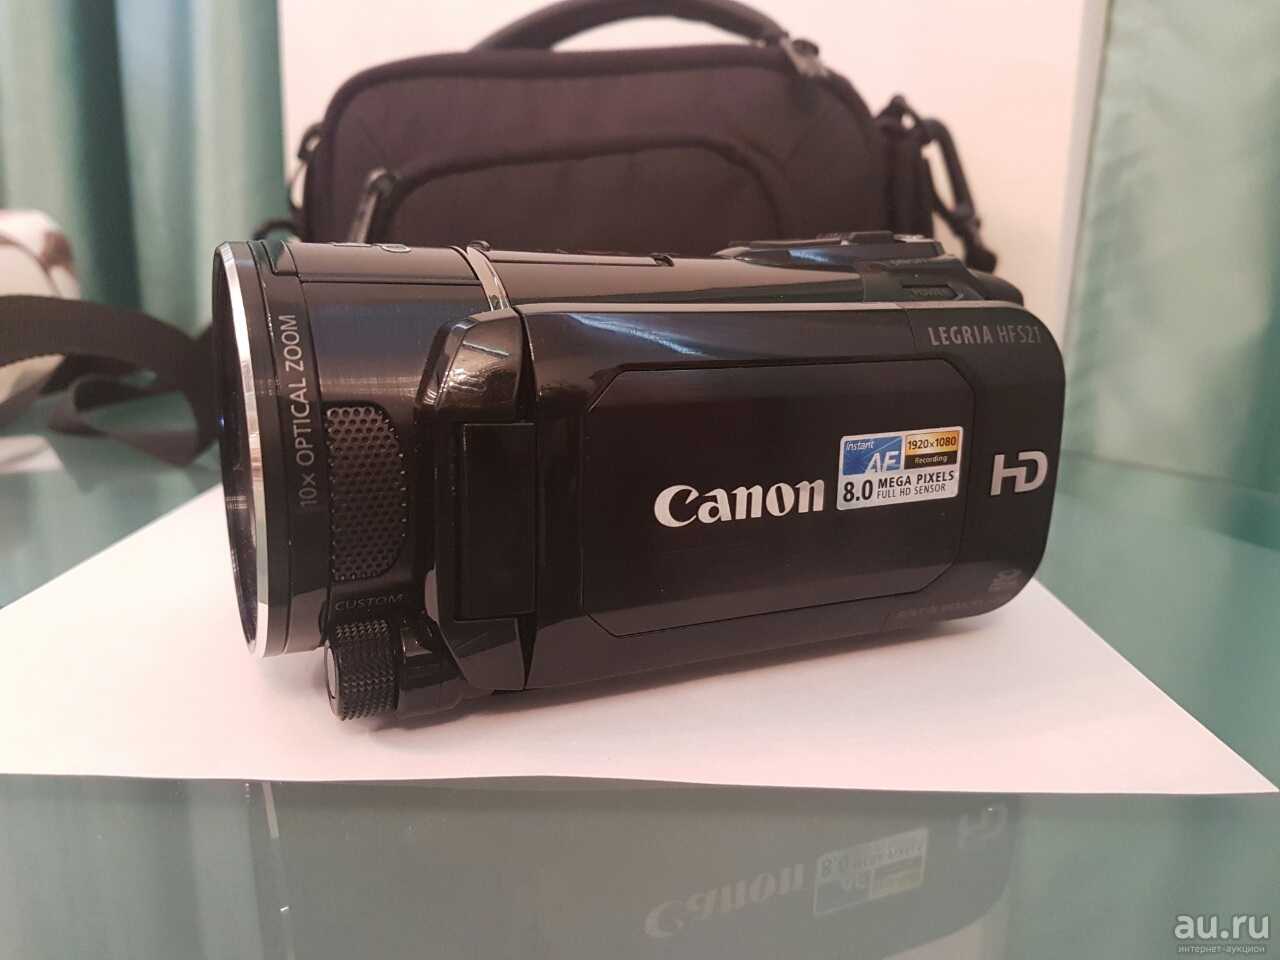 Видеокамера canon legria hf m41 — купить, цена и характеристики, отзывы